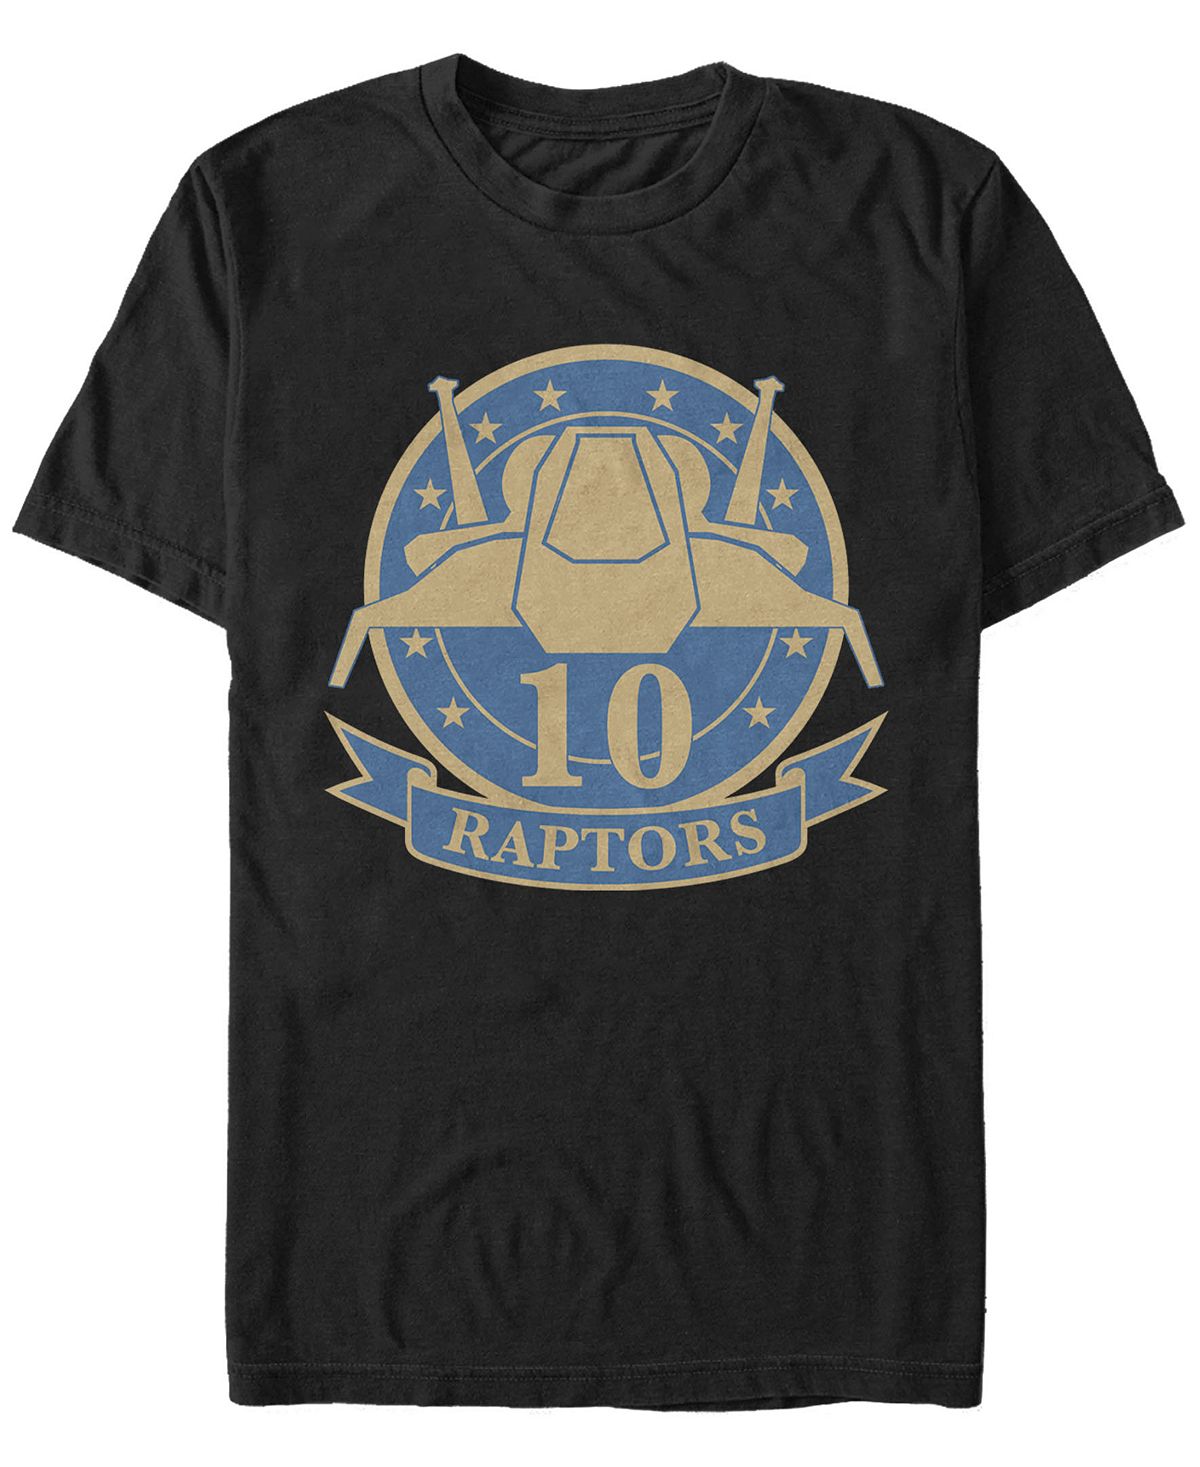 Мужская футболка с коротким рукавом battlestar galactica raptor merit badge Fifth Sun, черный